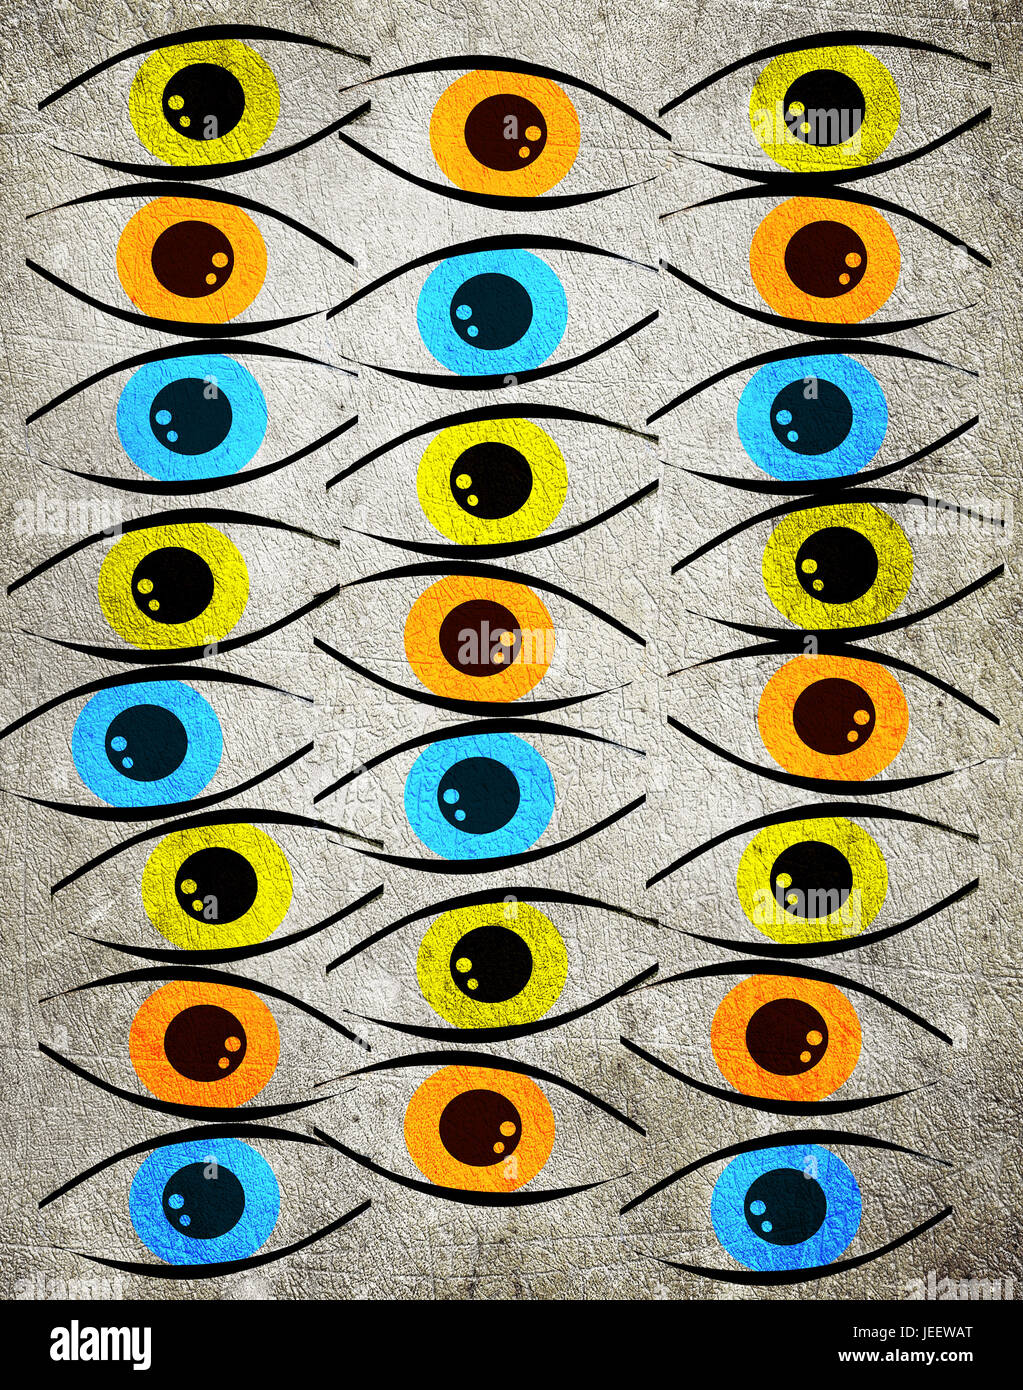 colored eyes digital illustration background Stock Photo